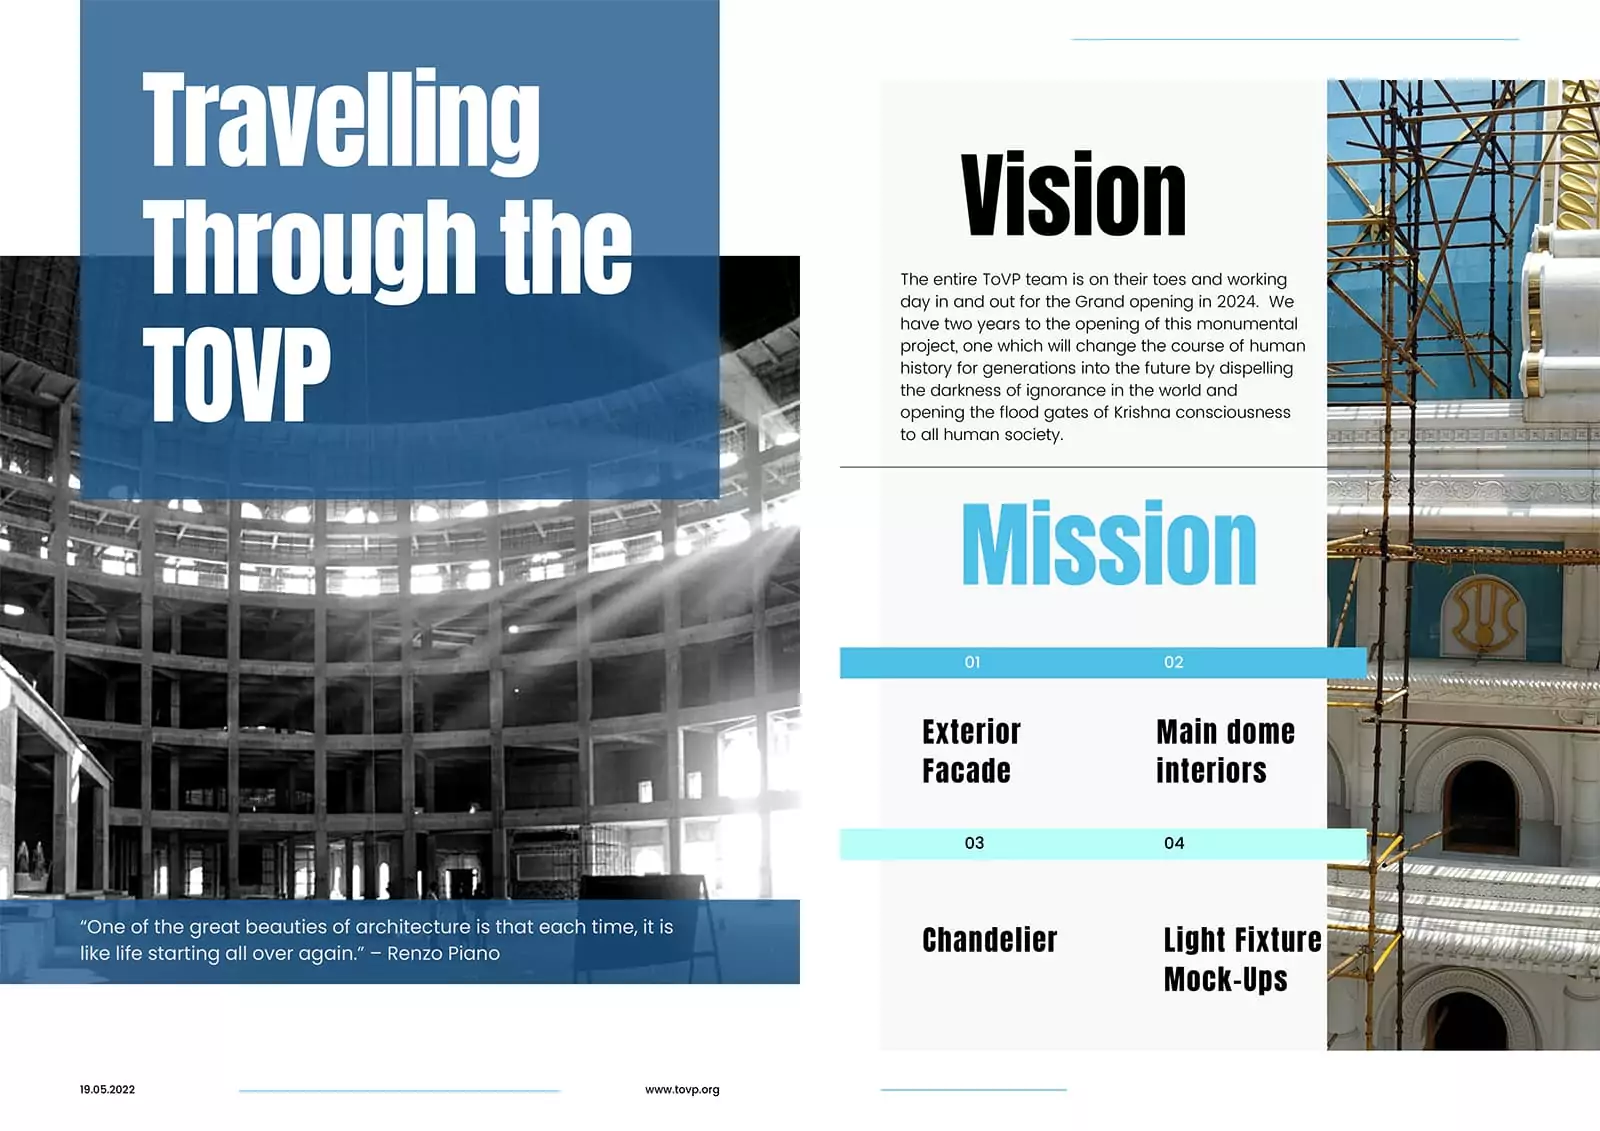 TOVP আর্কিটেকচার ডিপার্টমেন্ট রিপোর্ট, জুন 2022: TOVP এর মাধ্যমে ভ্রমণ